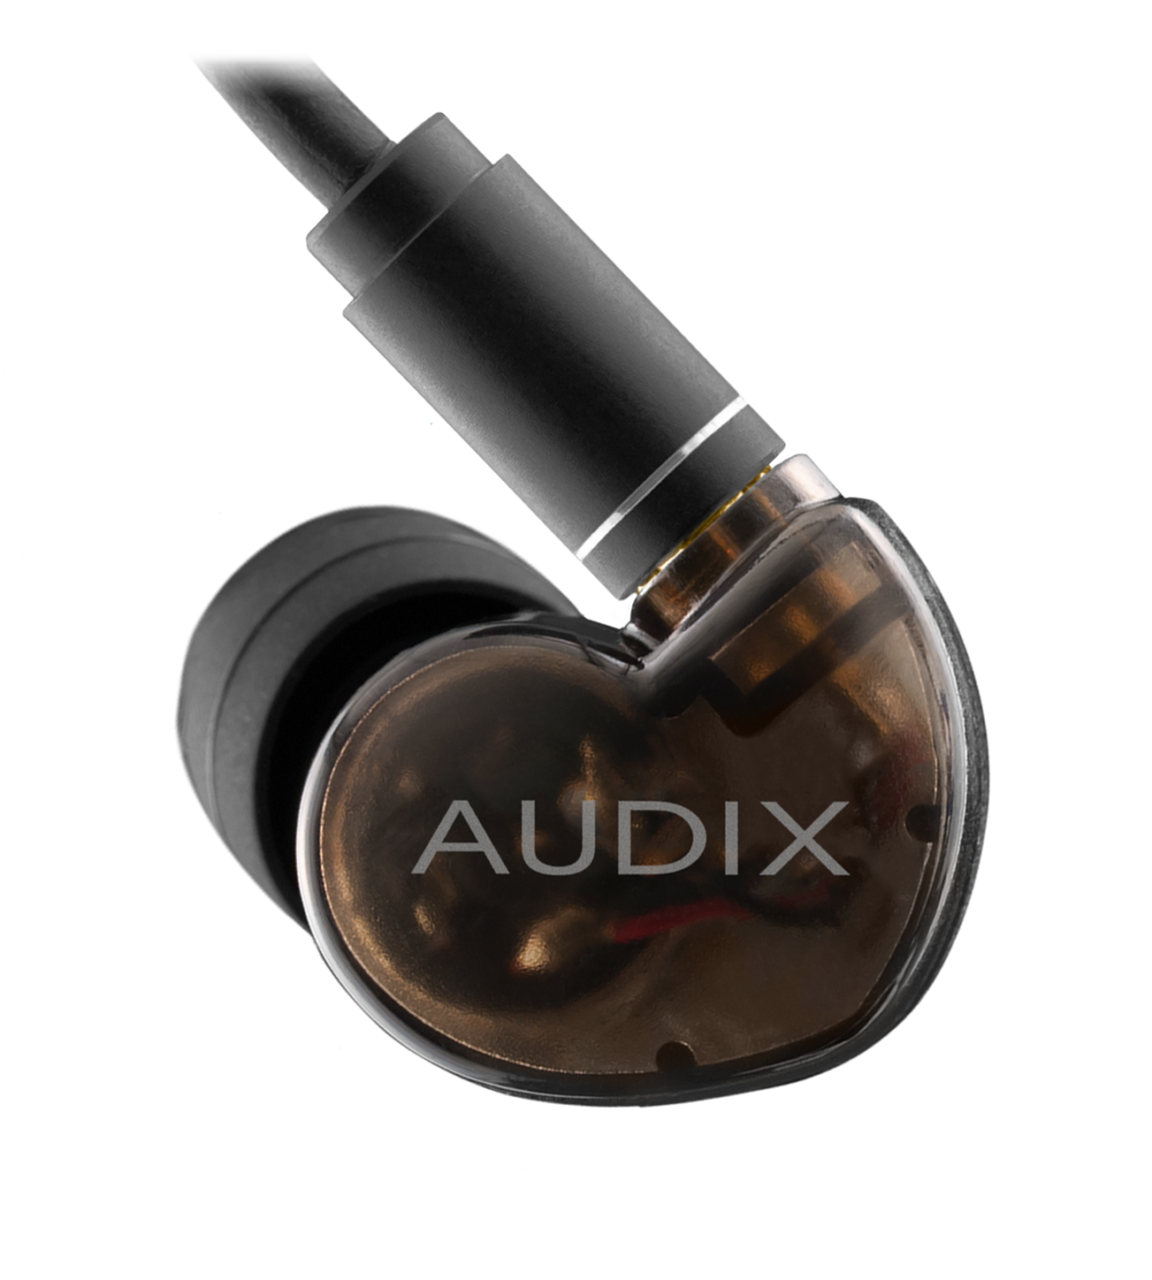 Audix A10 Studio-Quality Earphones